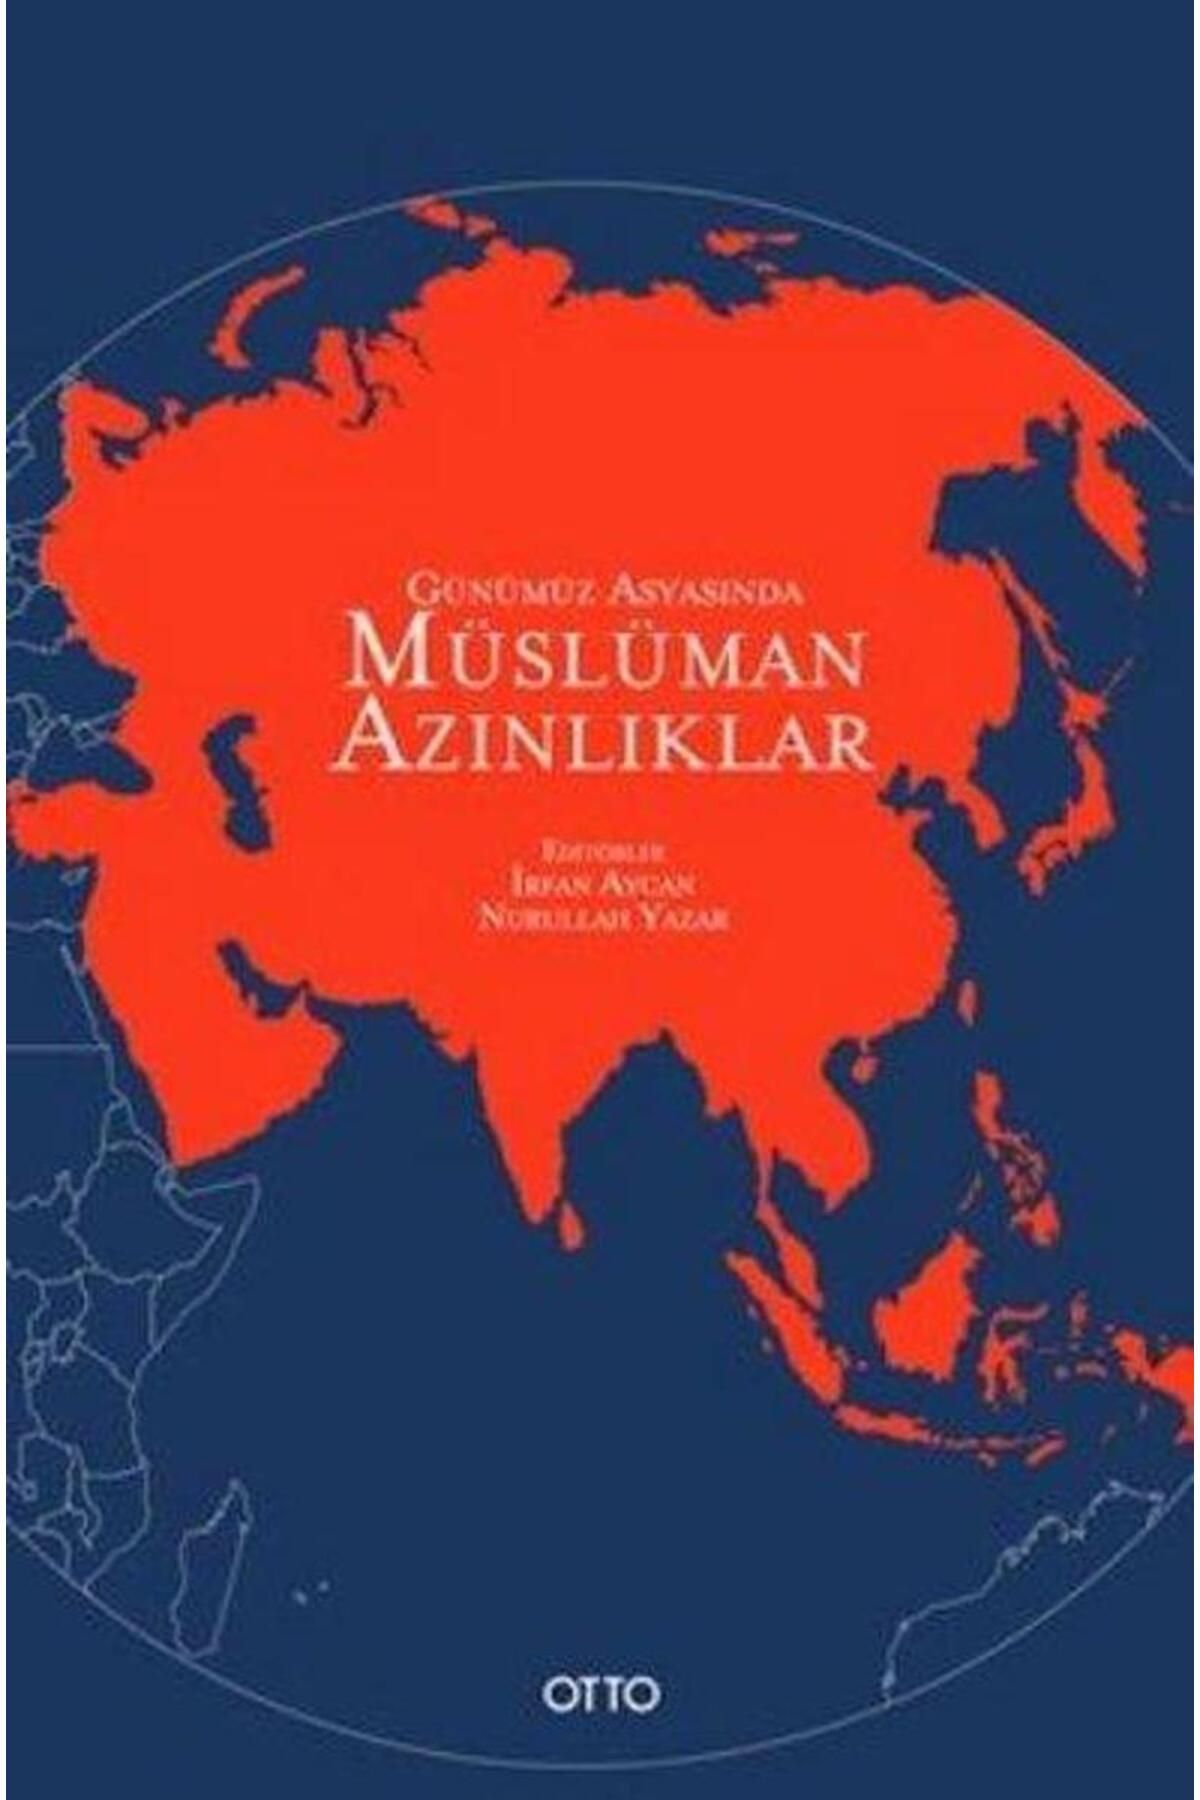 Otto Günümüz Asyasında Müslüman Azınlıklar